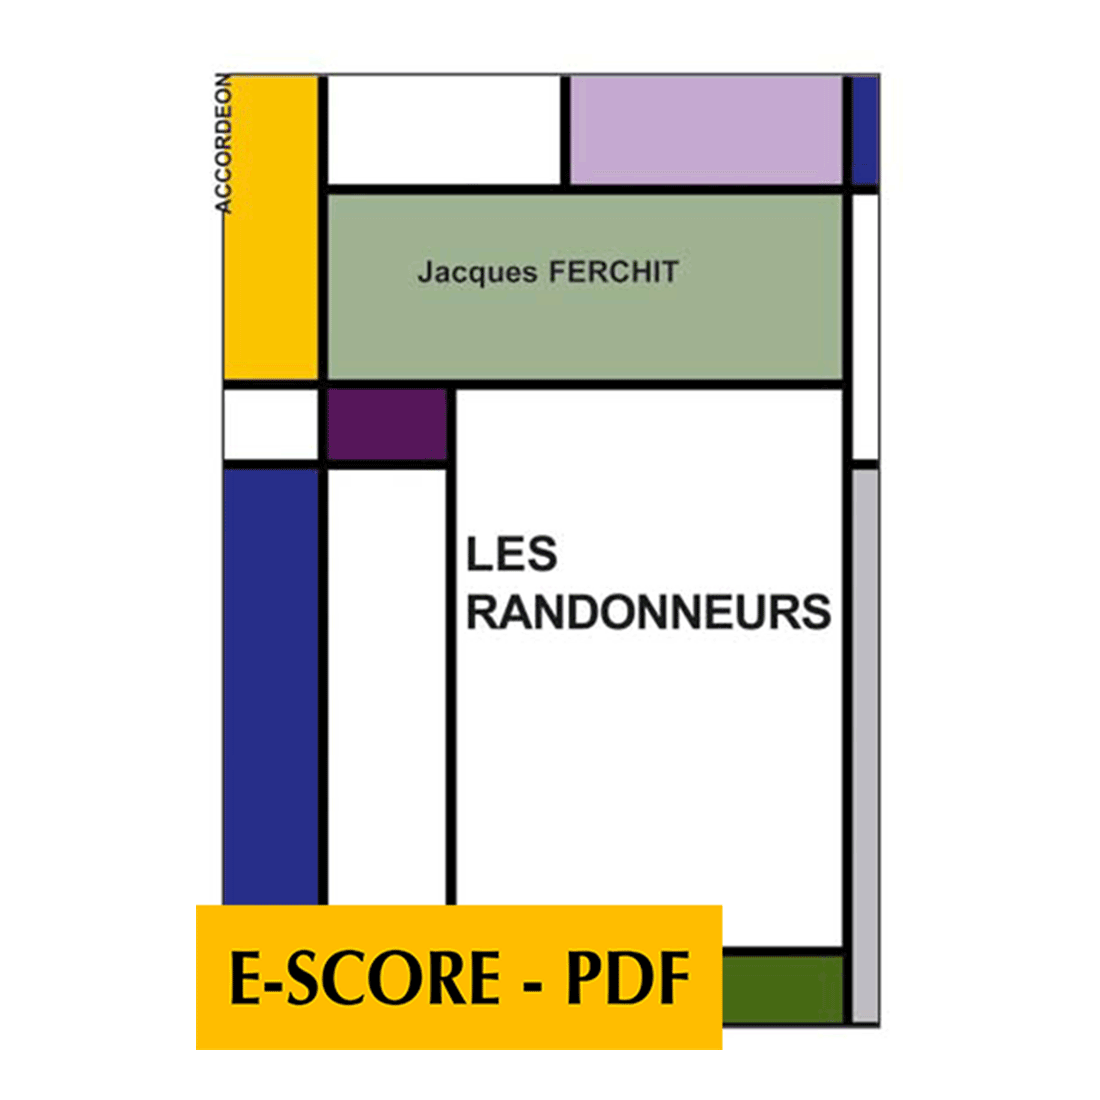 Les randonneurs pour accordéon - E-score PDF